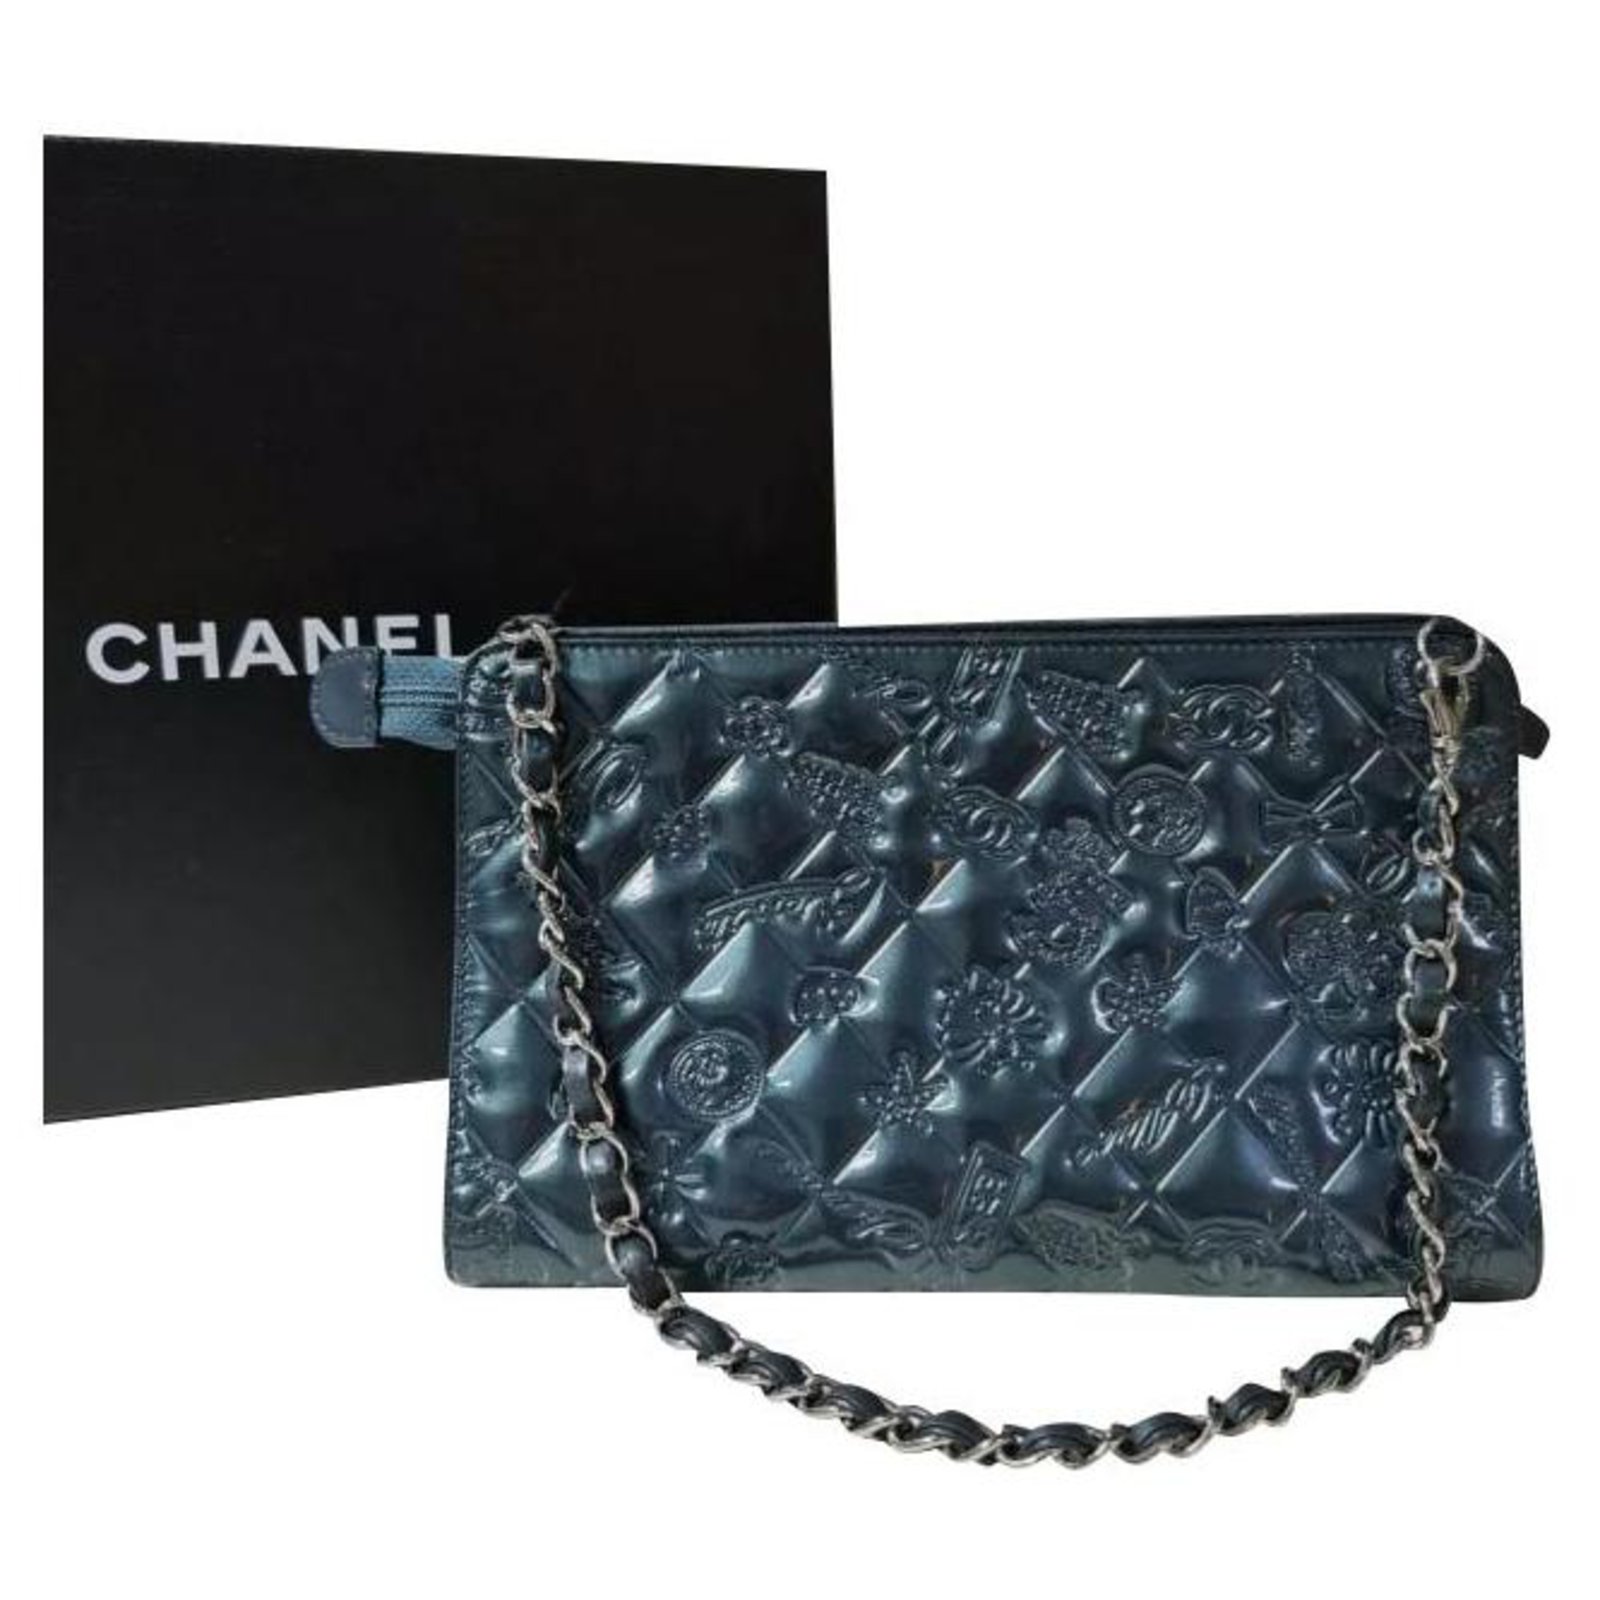 Chanel Mademoiselle Biarritz No 5 Monaco Paris Purse Teal Patent Leather  Baguett